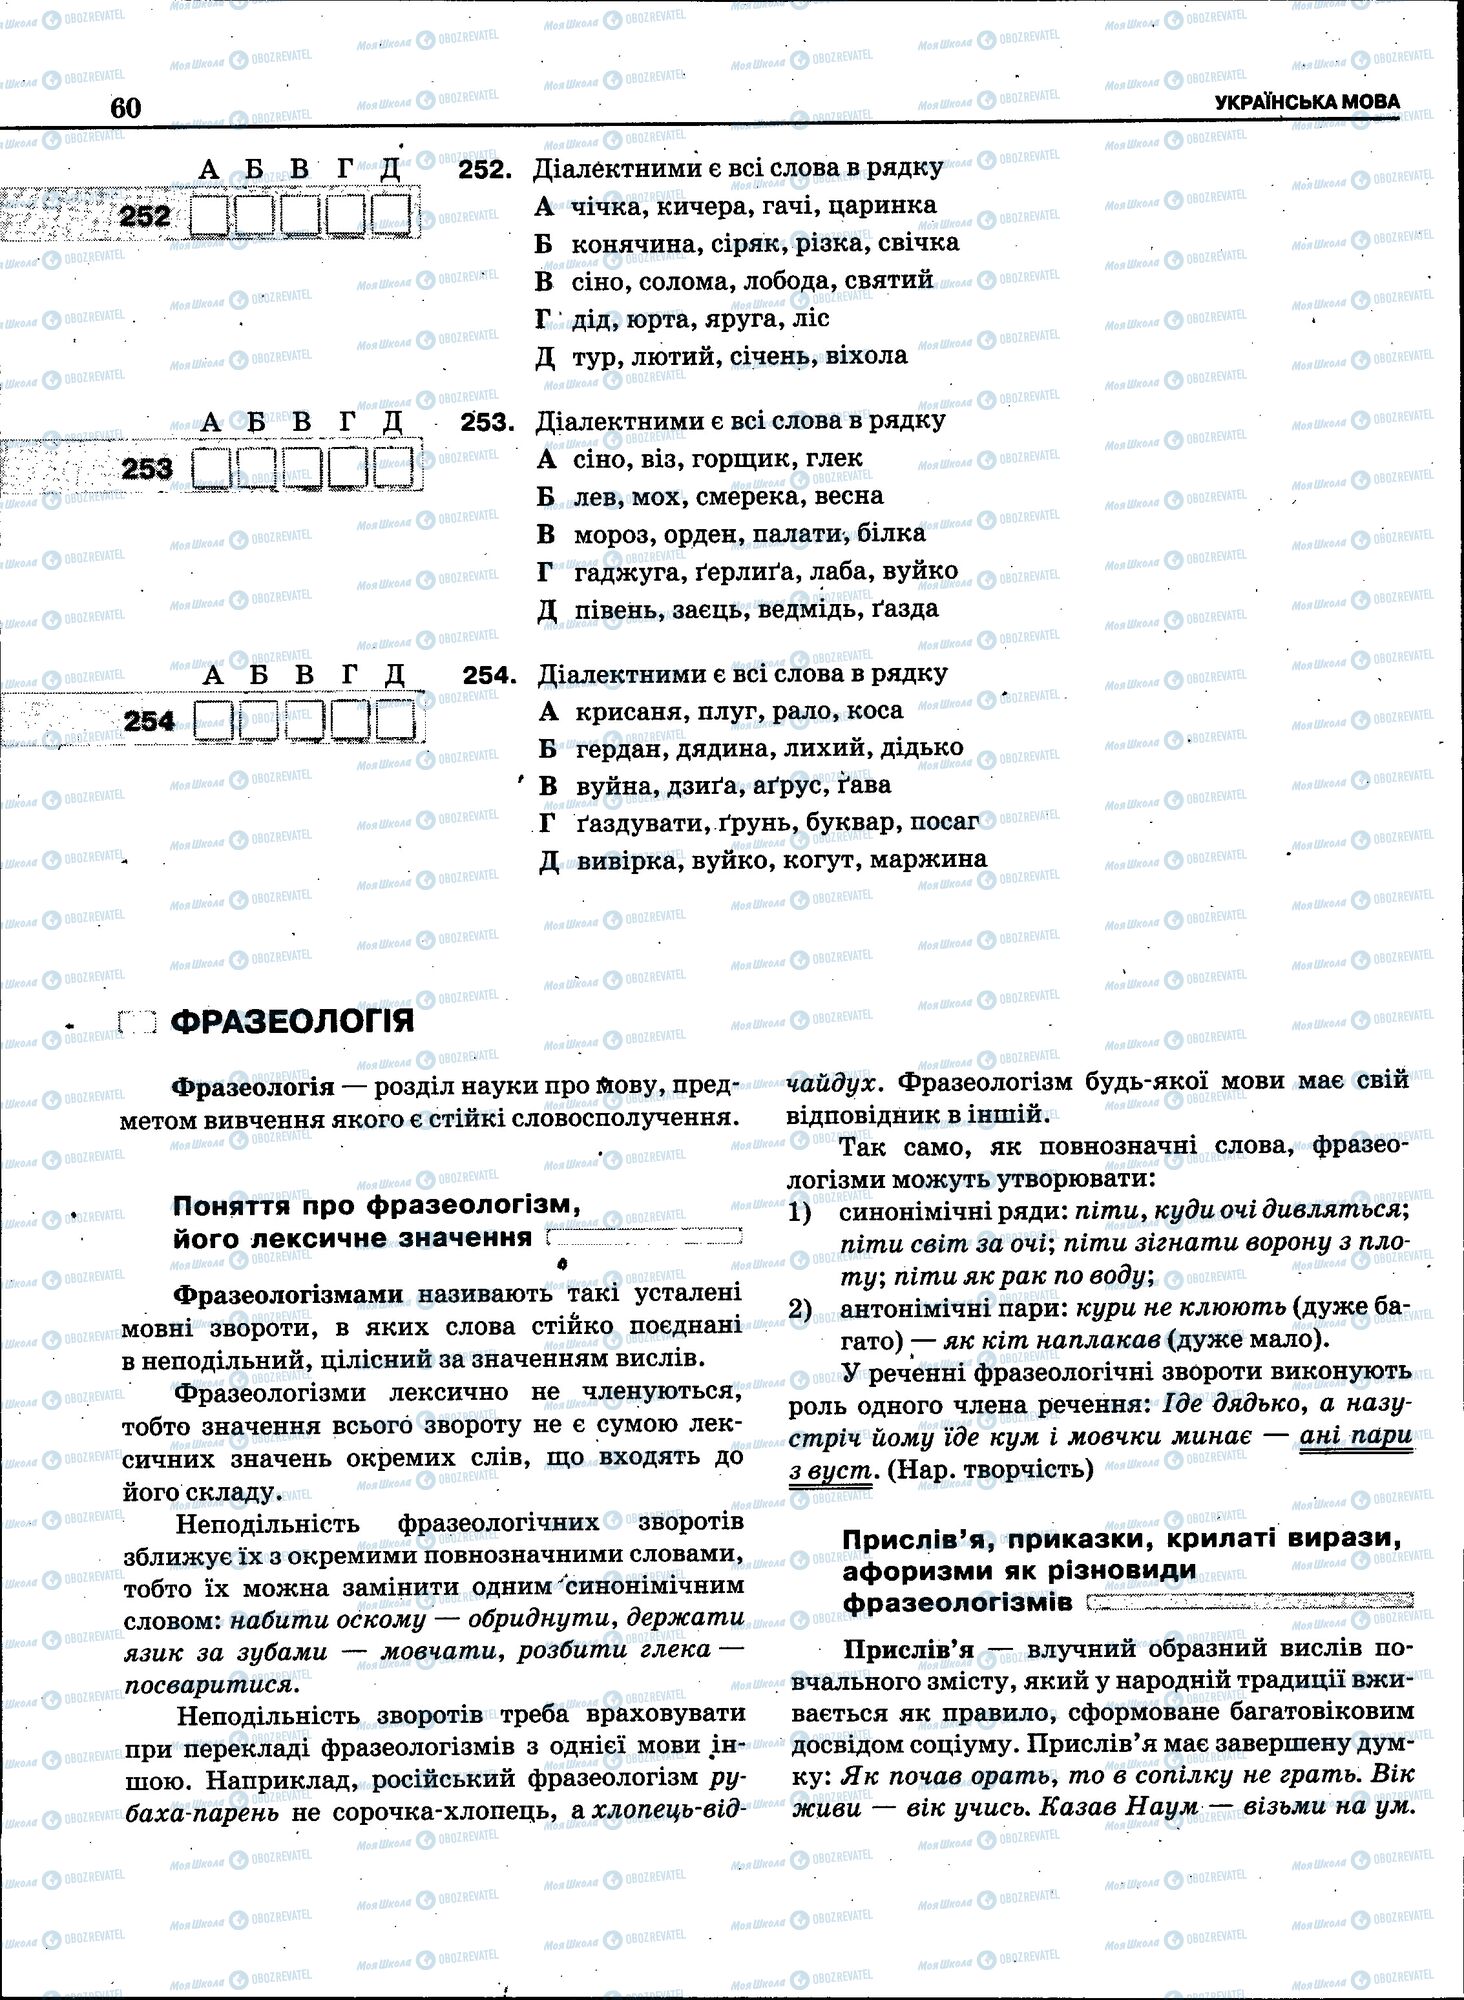 ЗНО Укр мова 11 класс страница 058